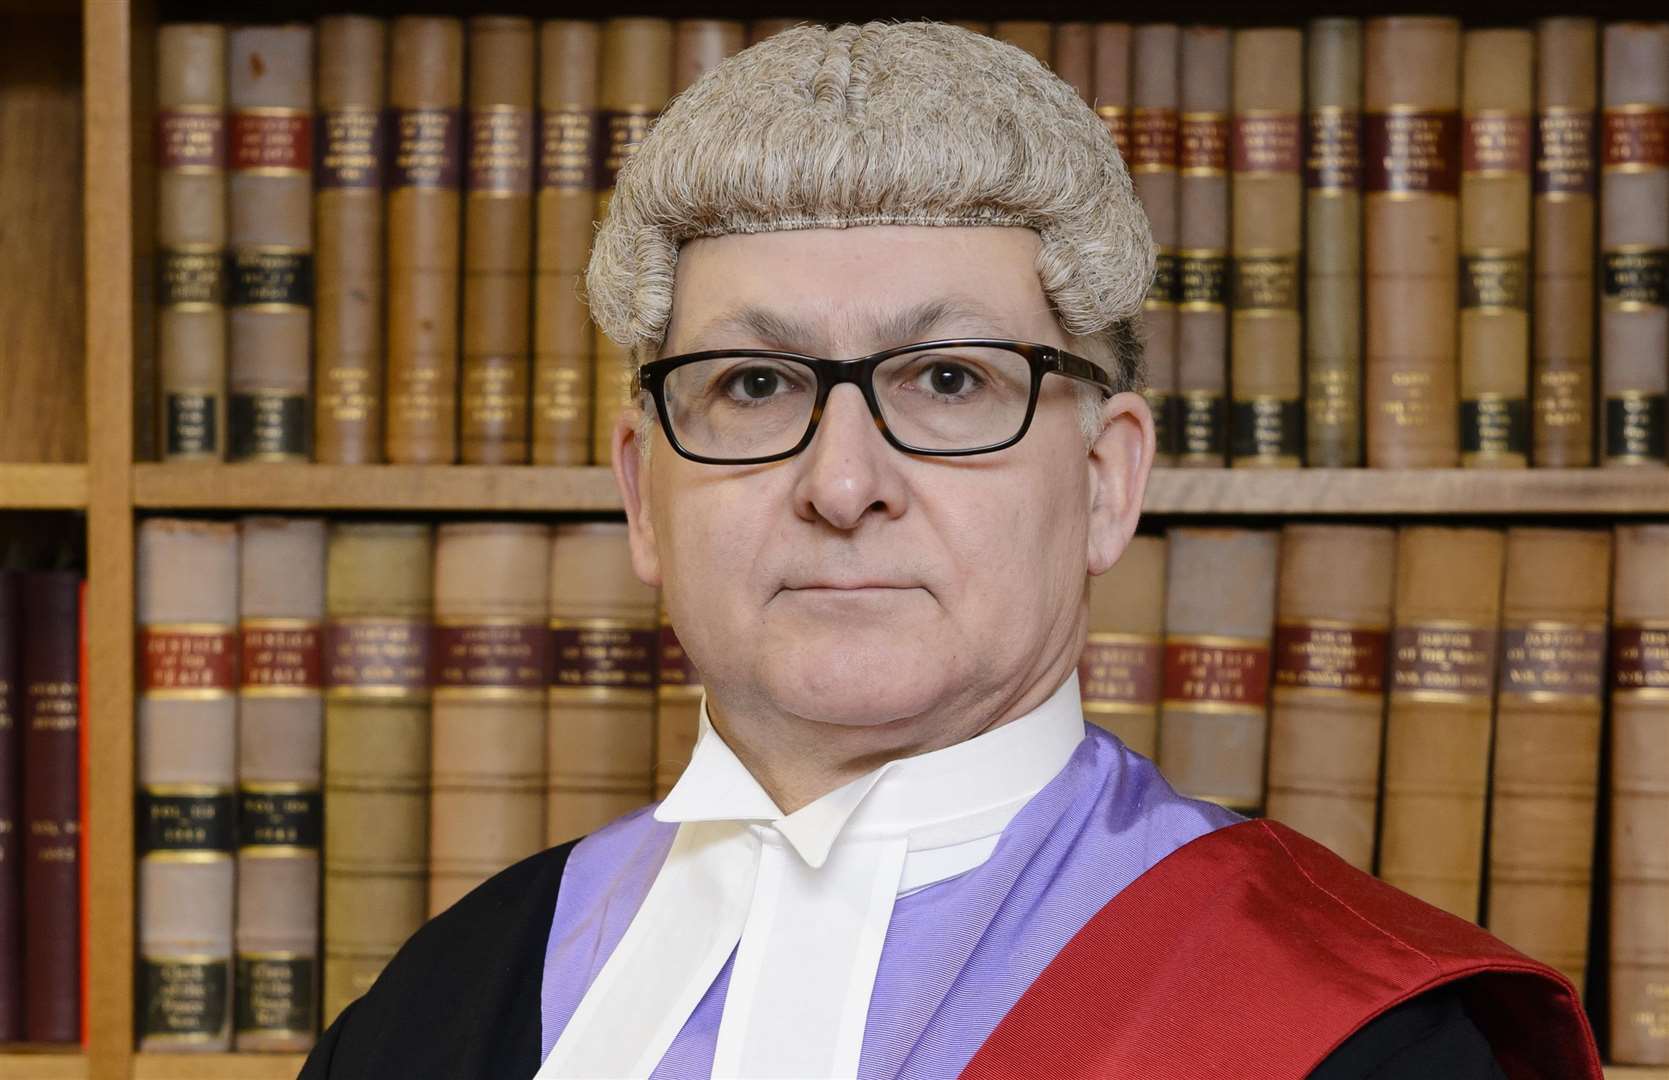 Judge Martin Huseyin